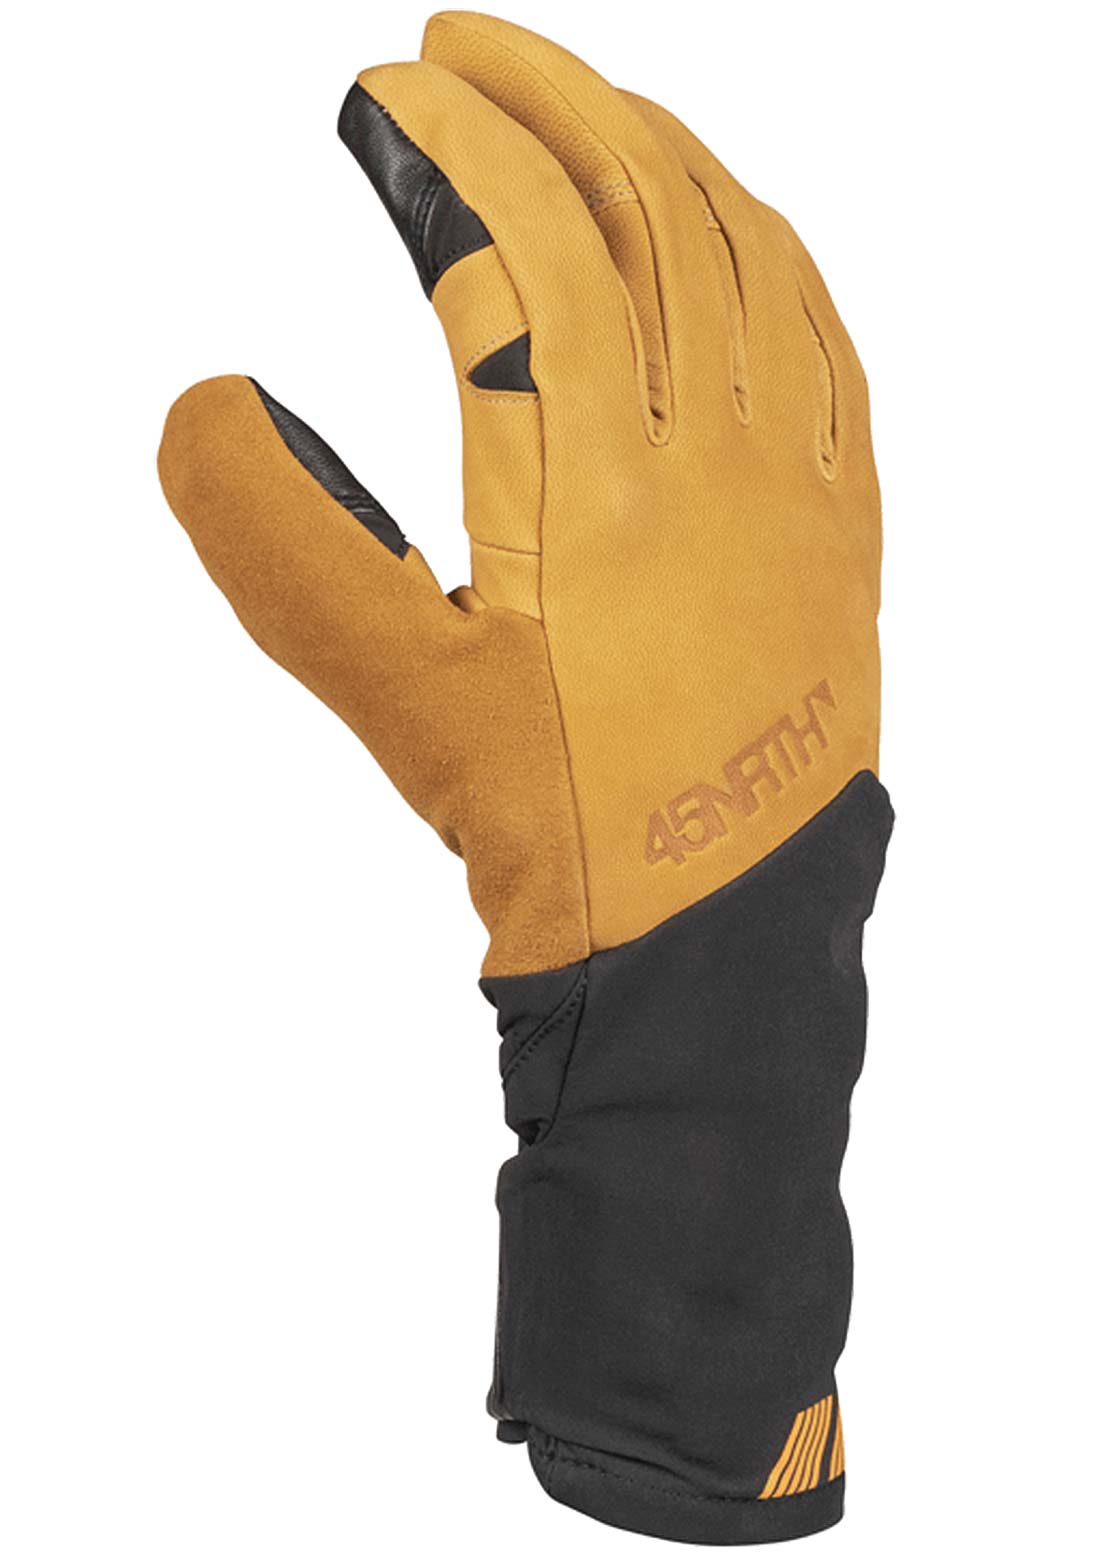 45NRTH Sturmfist 5 Full Finger Gloves Leather